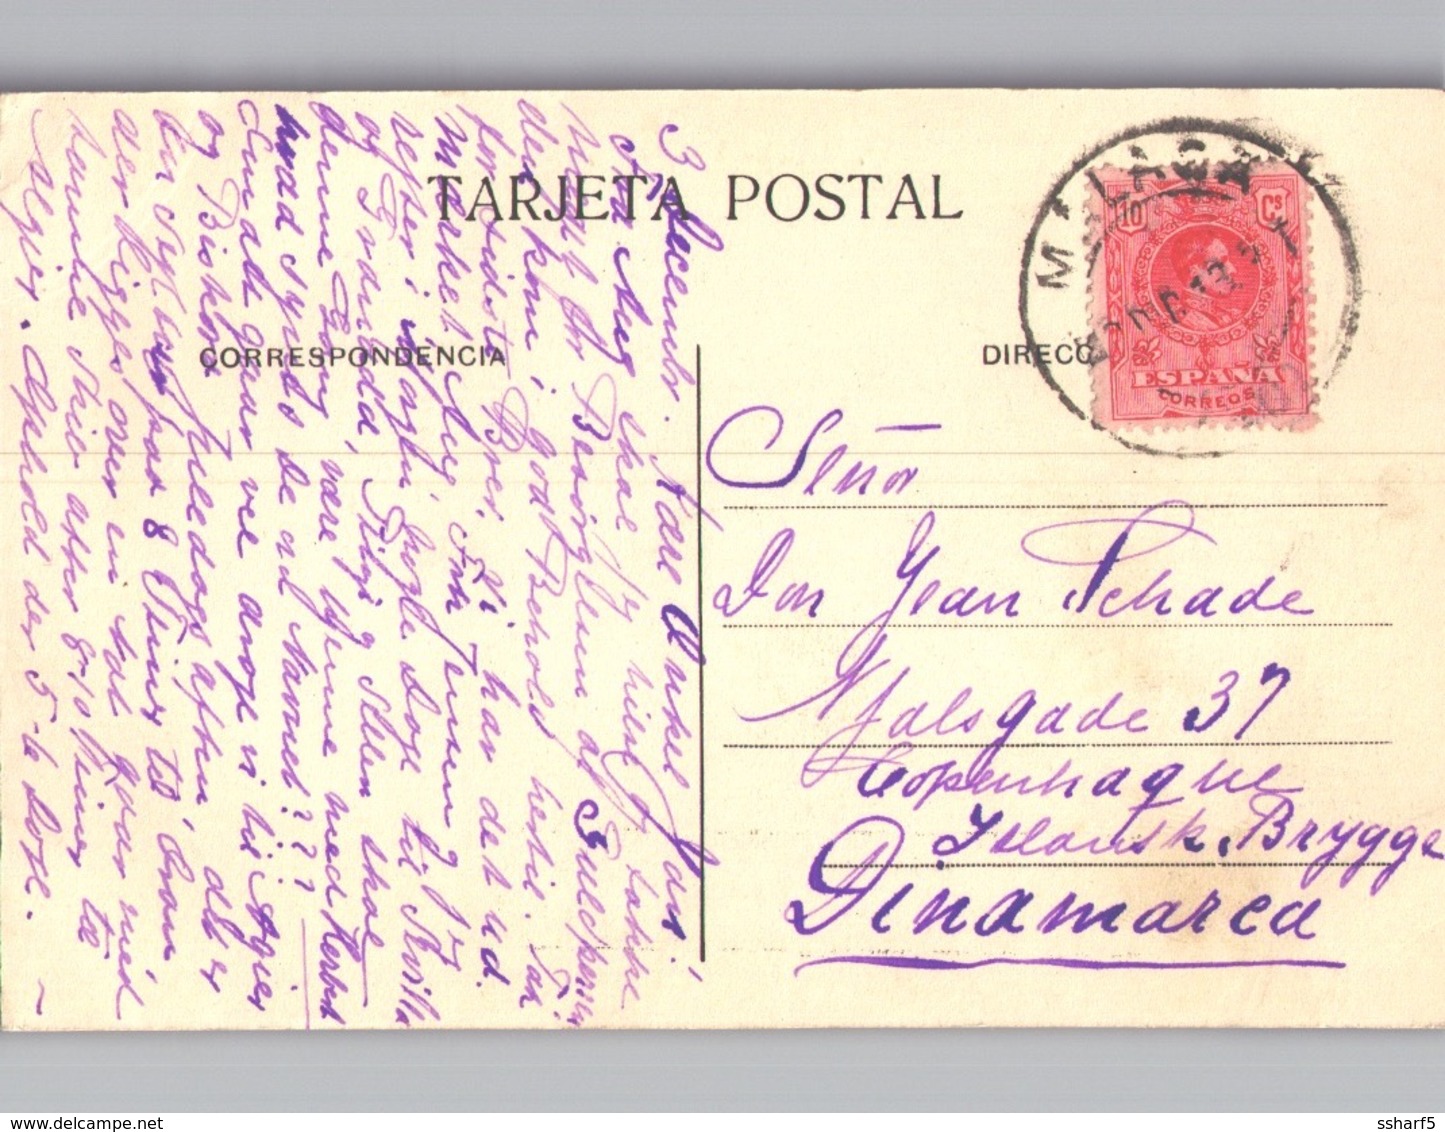 4 postales MALAGA HACIENDE DE GIRÓ, Parque, Panorama, Treno Paseo del Muelle 1913